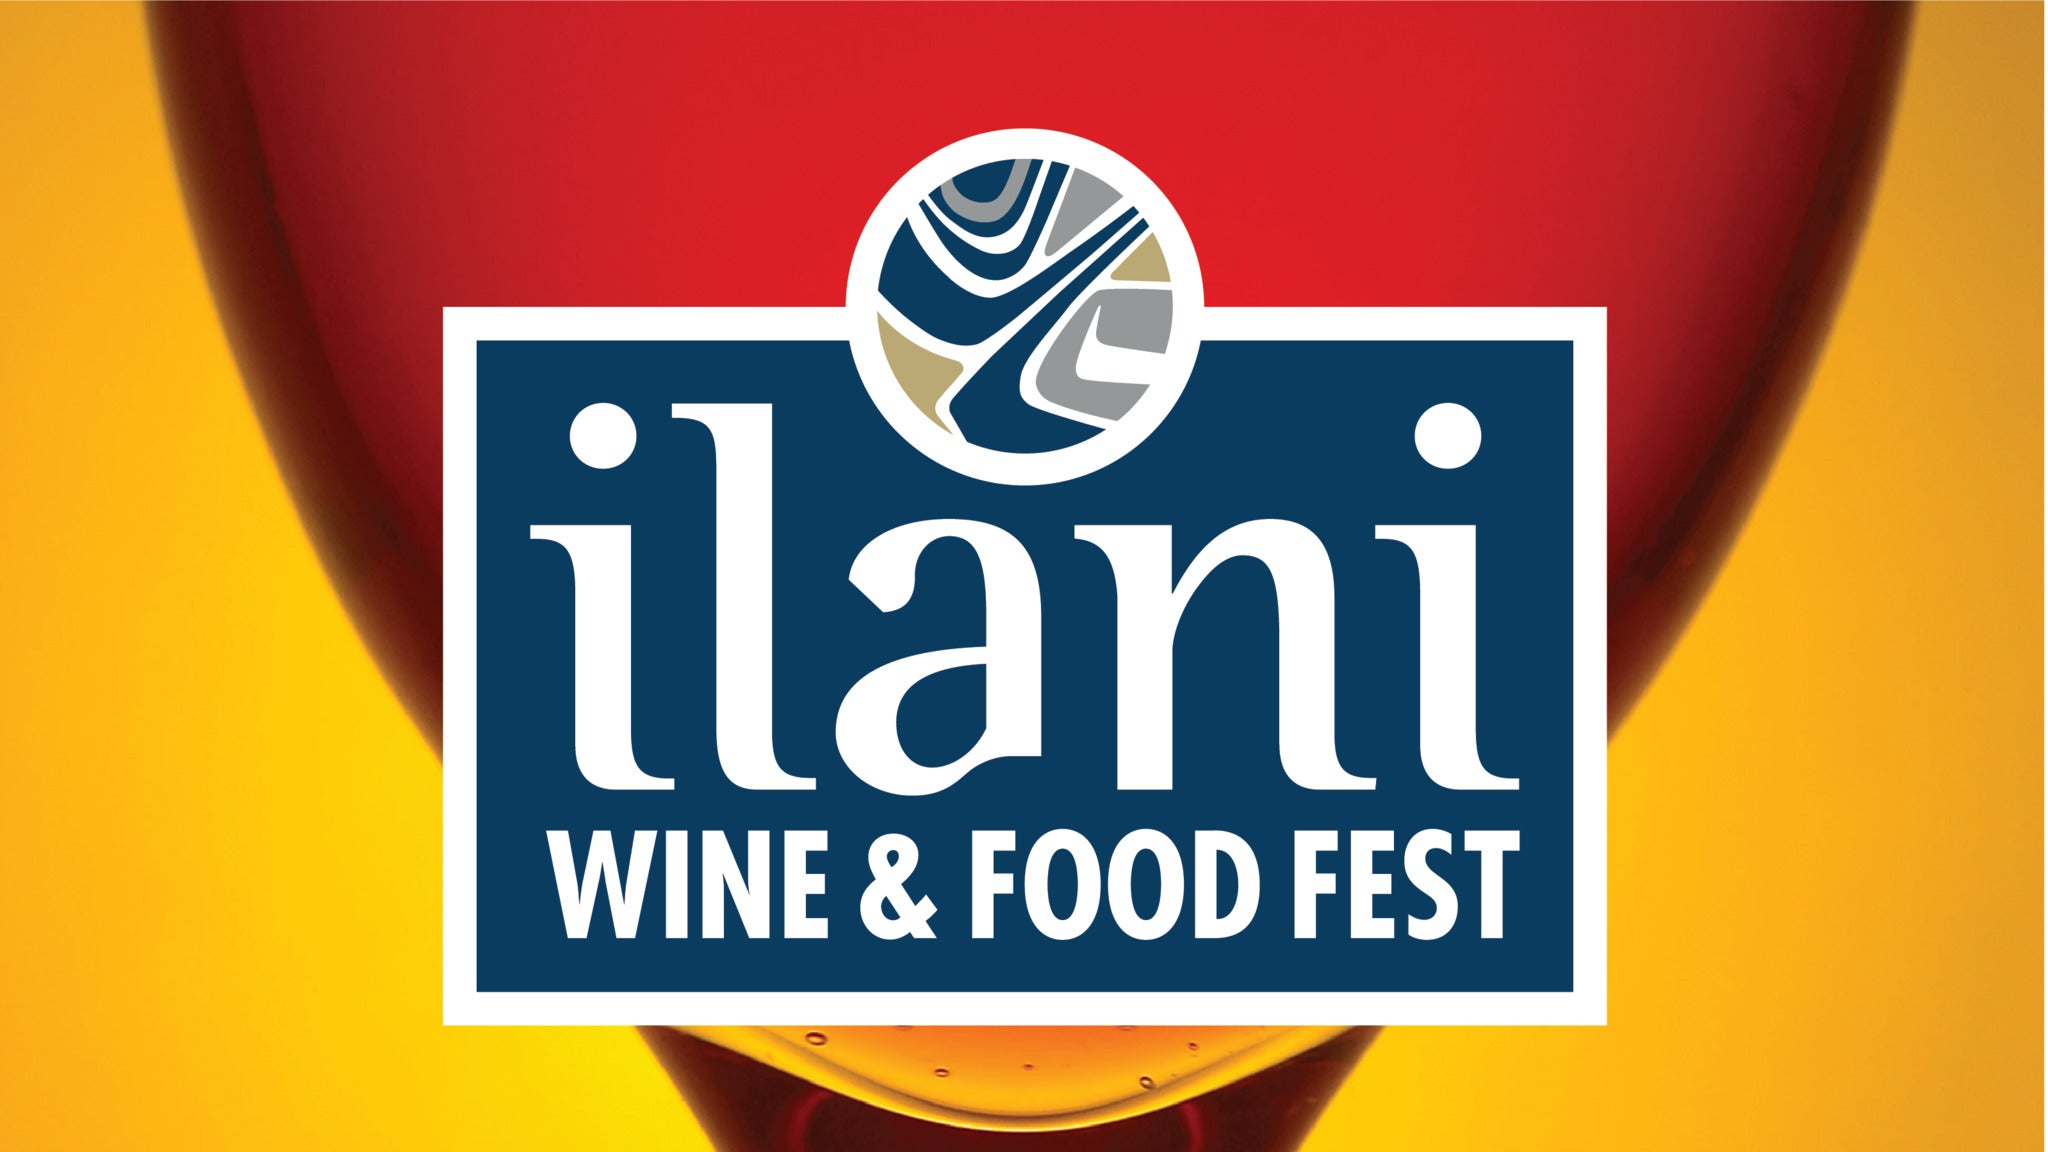 ilani Wine & Food Fest Saturday Grand Tasting in Ridgefield promo photo for Advance presale offer code